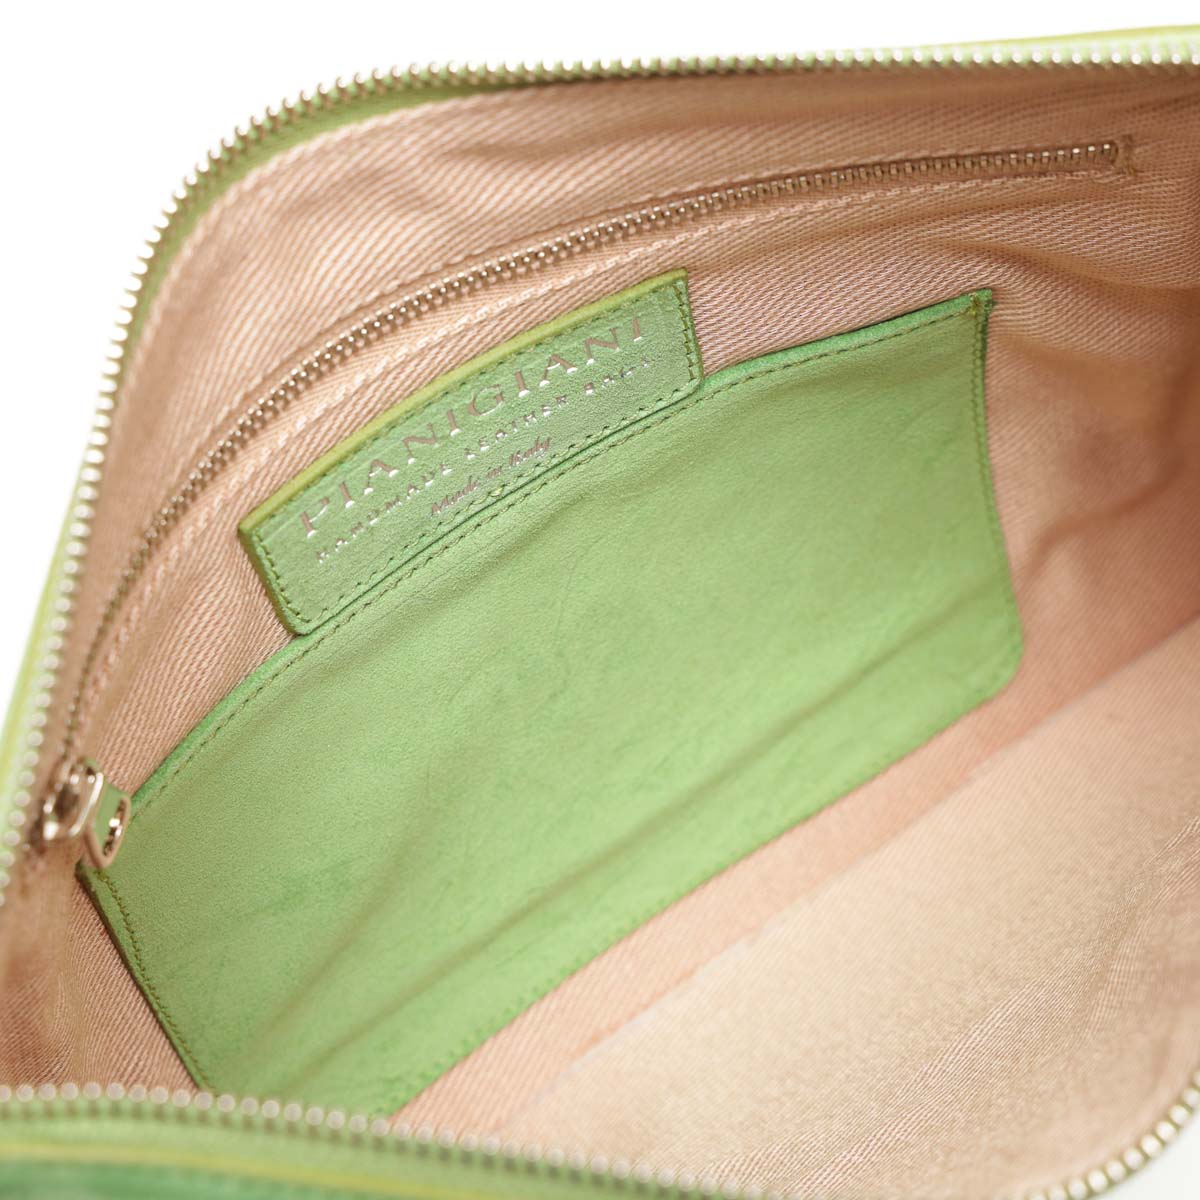 Rose, borsa modello bustina con polsino in pelle scamosciata verde, prodotta da Pianigiani.